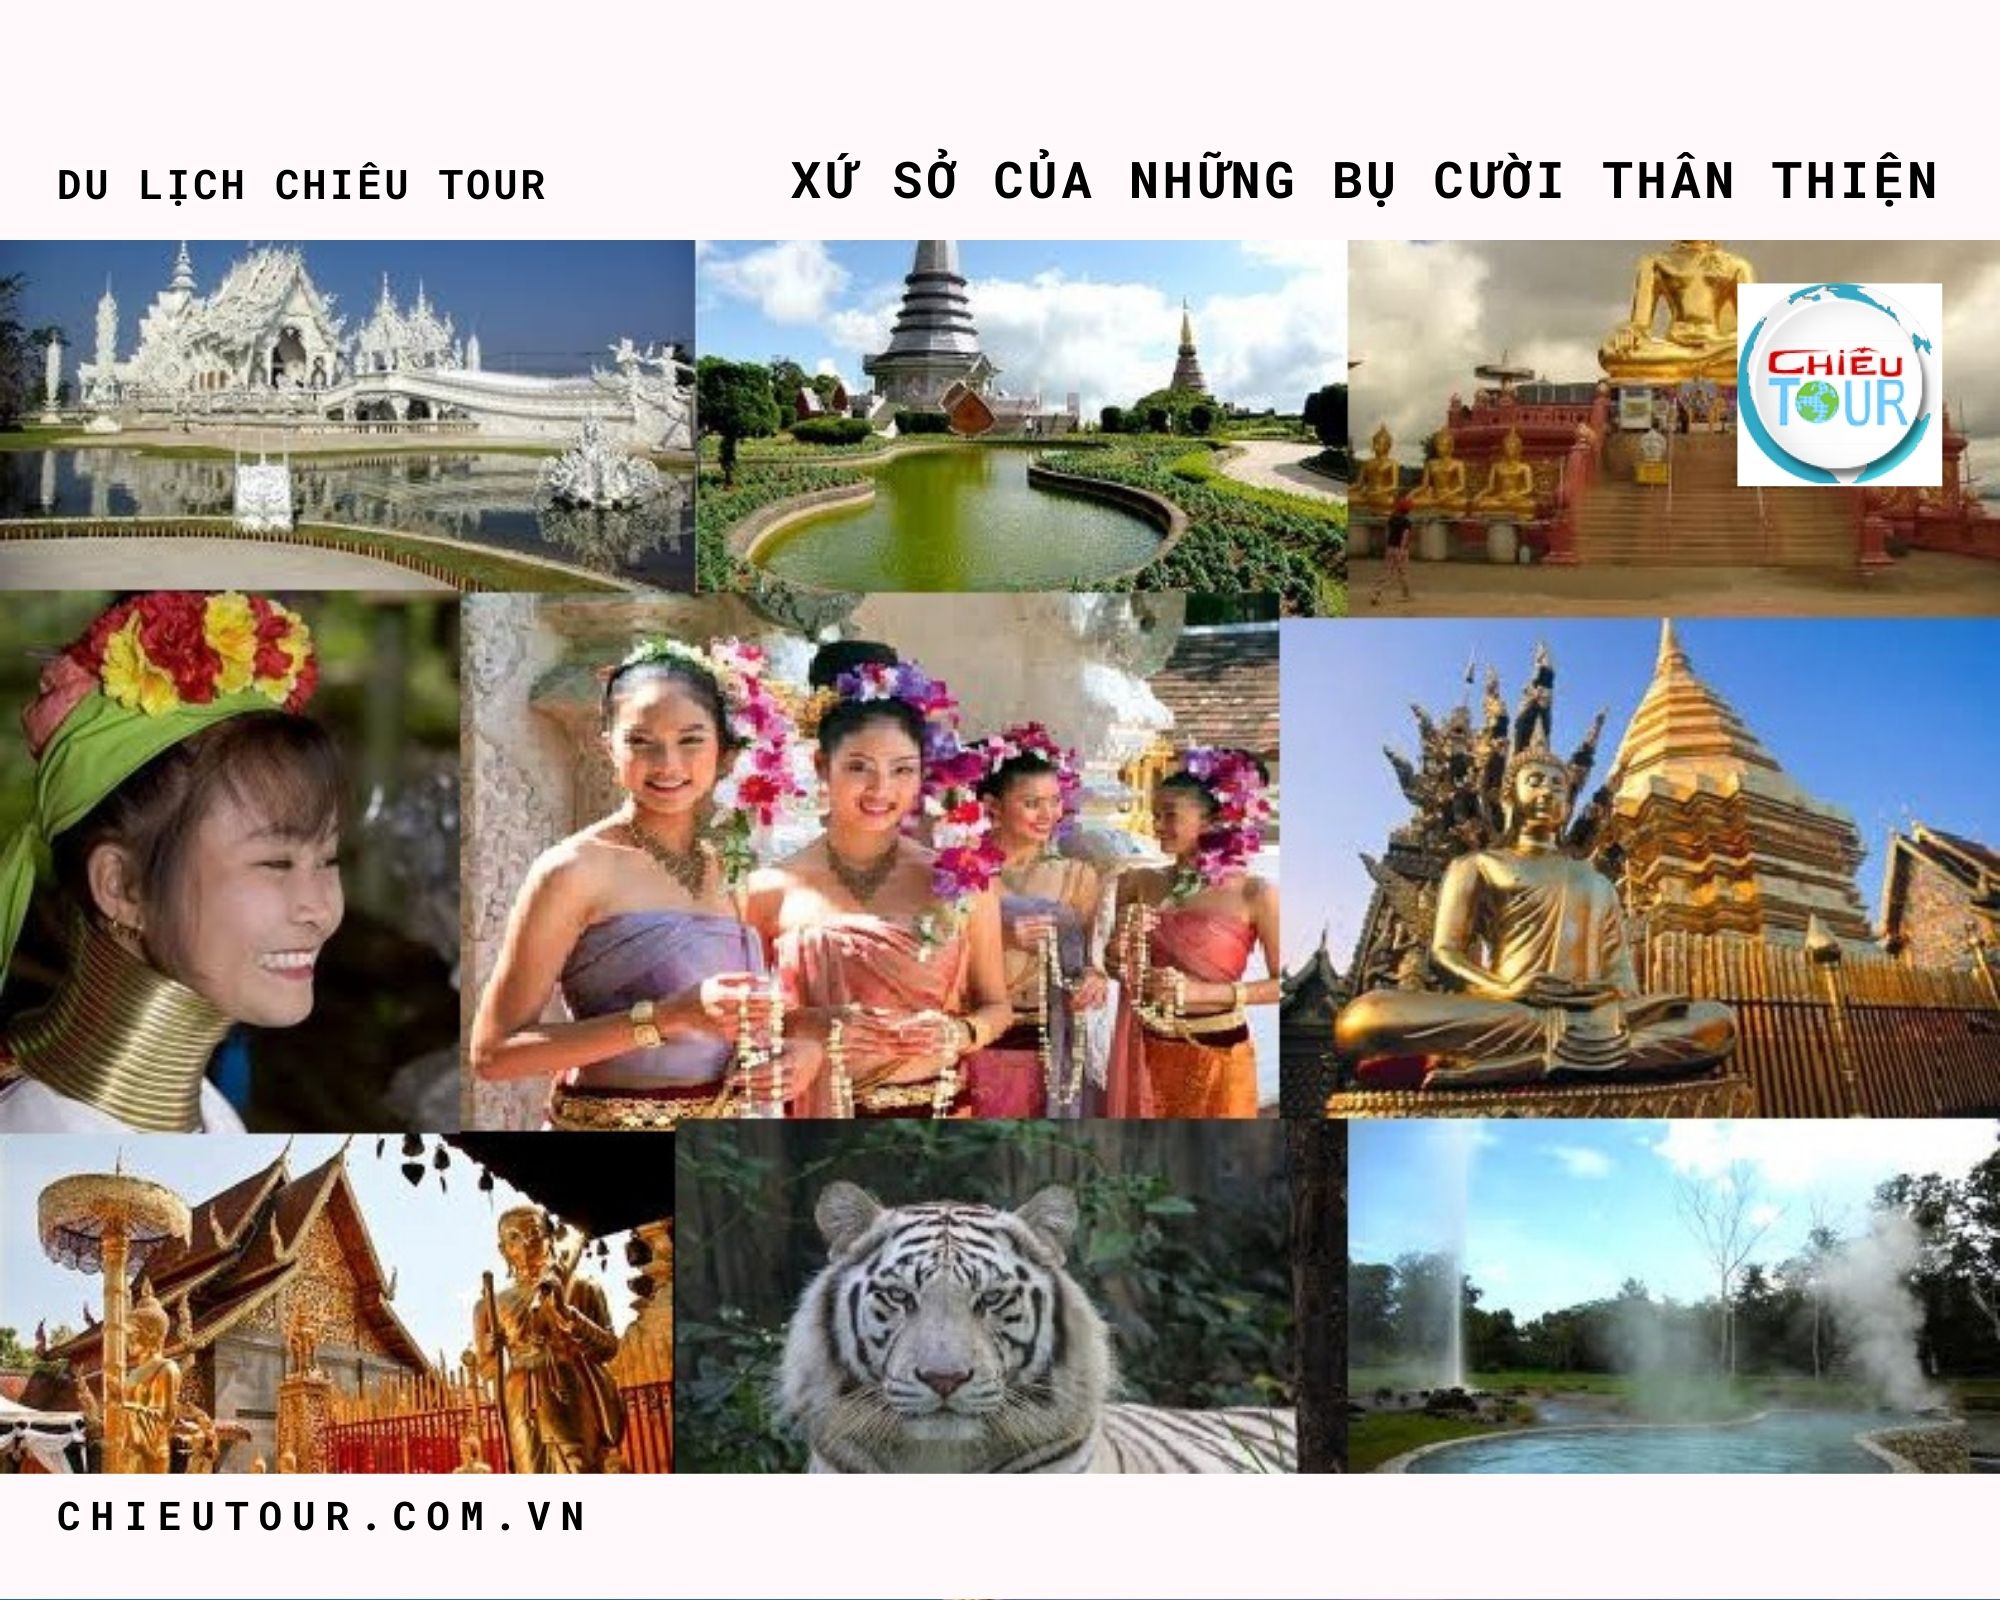 Tour du lịch Thái Lan Bangkok